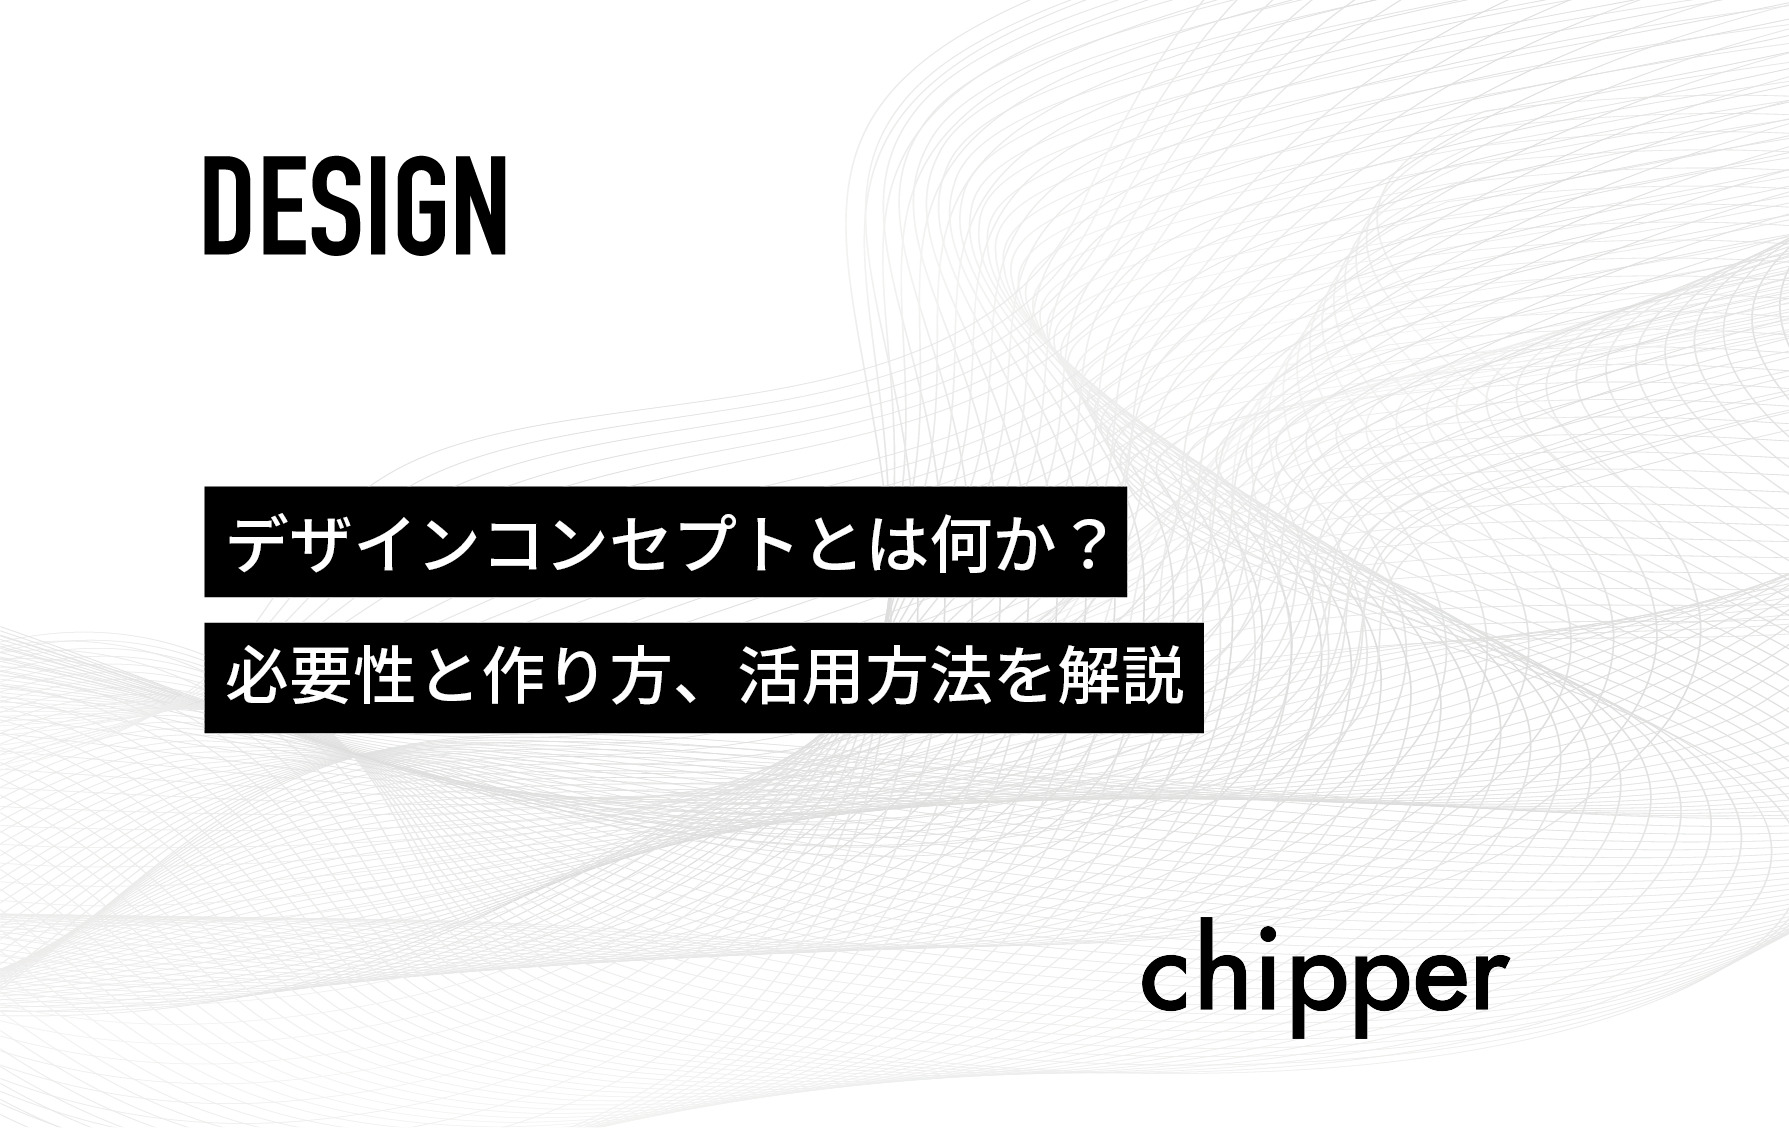 デザインコンセプトとは何か 必要性と作り方 活用方法を解説 株式会社chipper チッパー